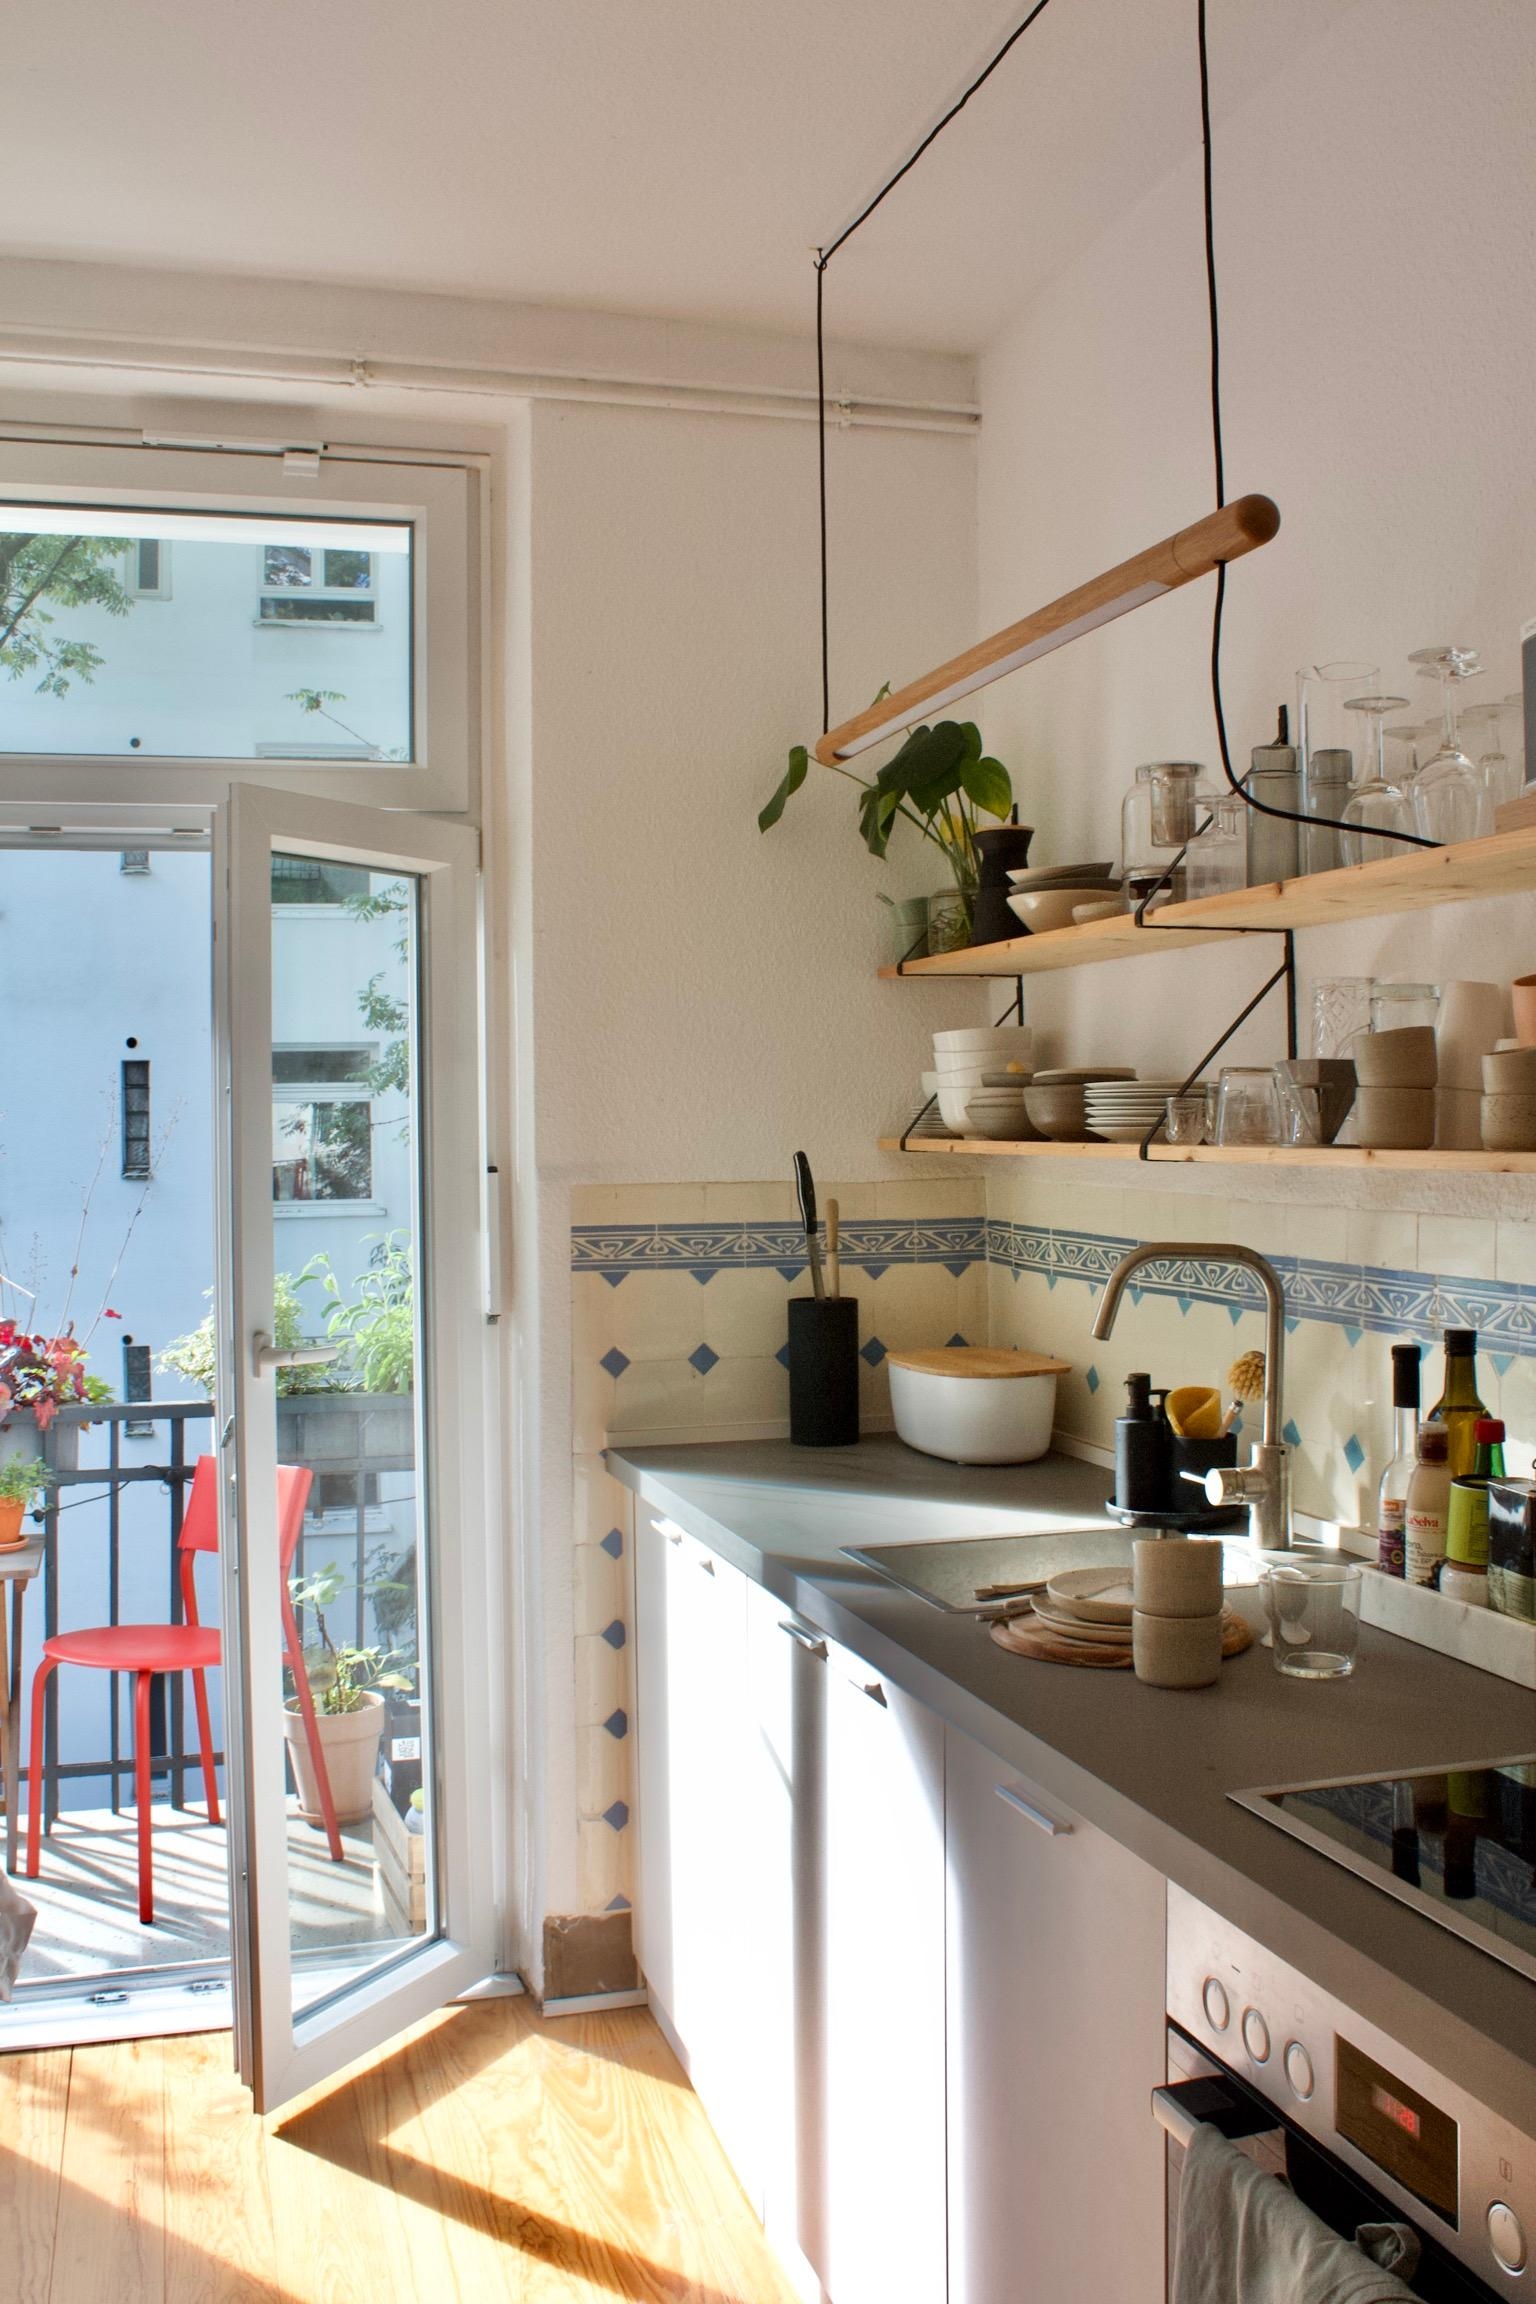 #küche #sunshine #altbau #wandregal #küchendesign #altbaufliesen #kleineküche